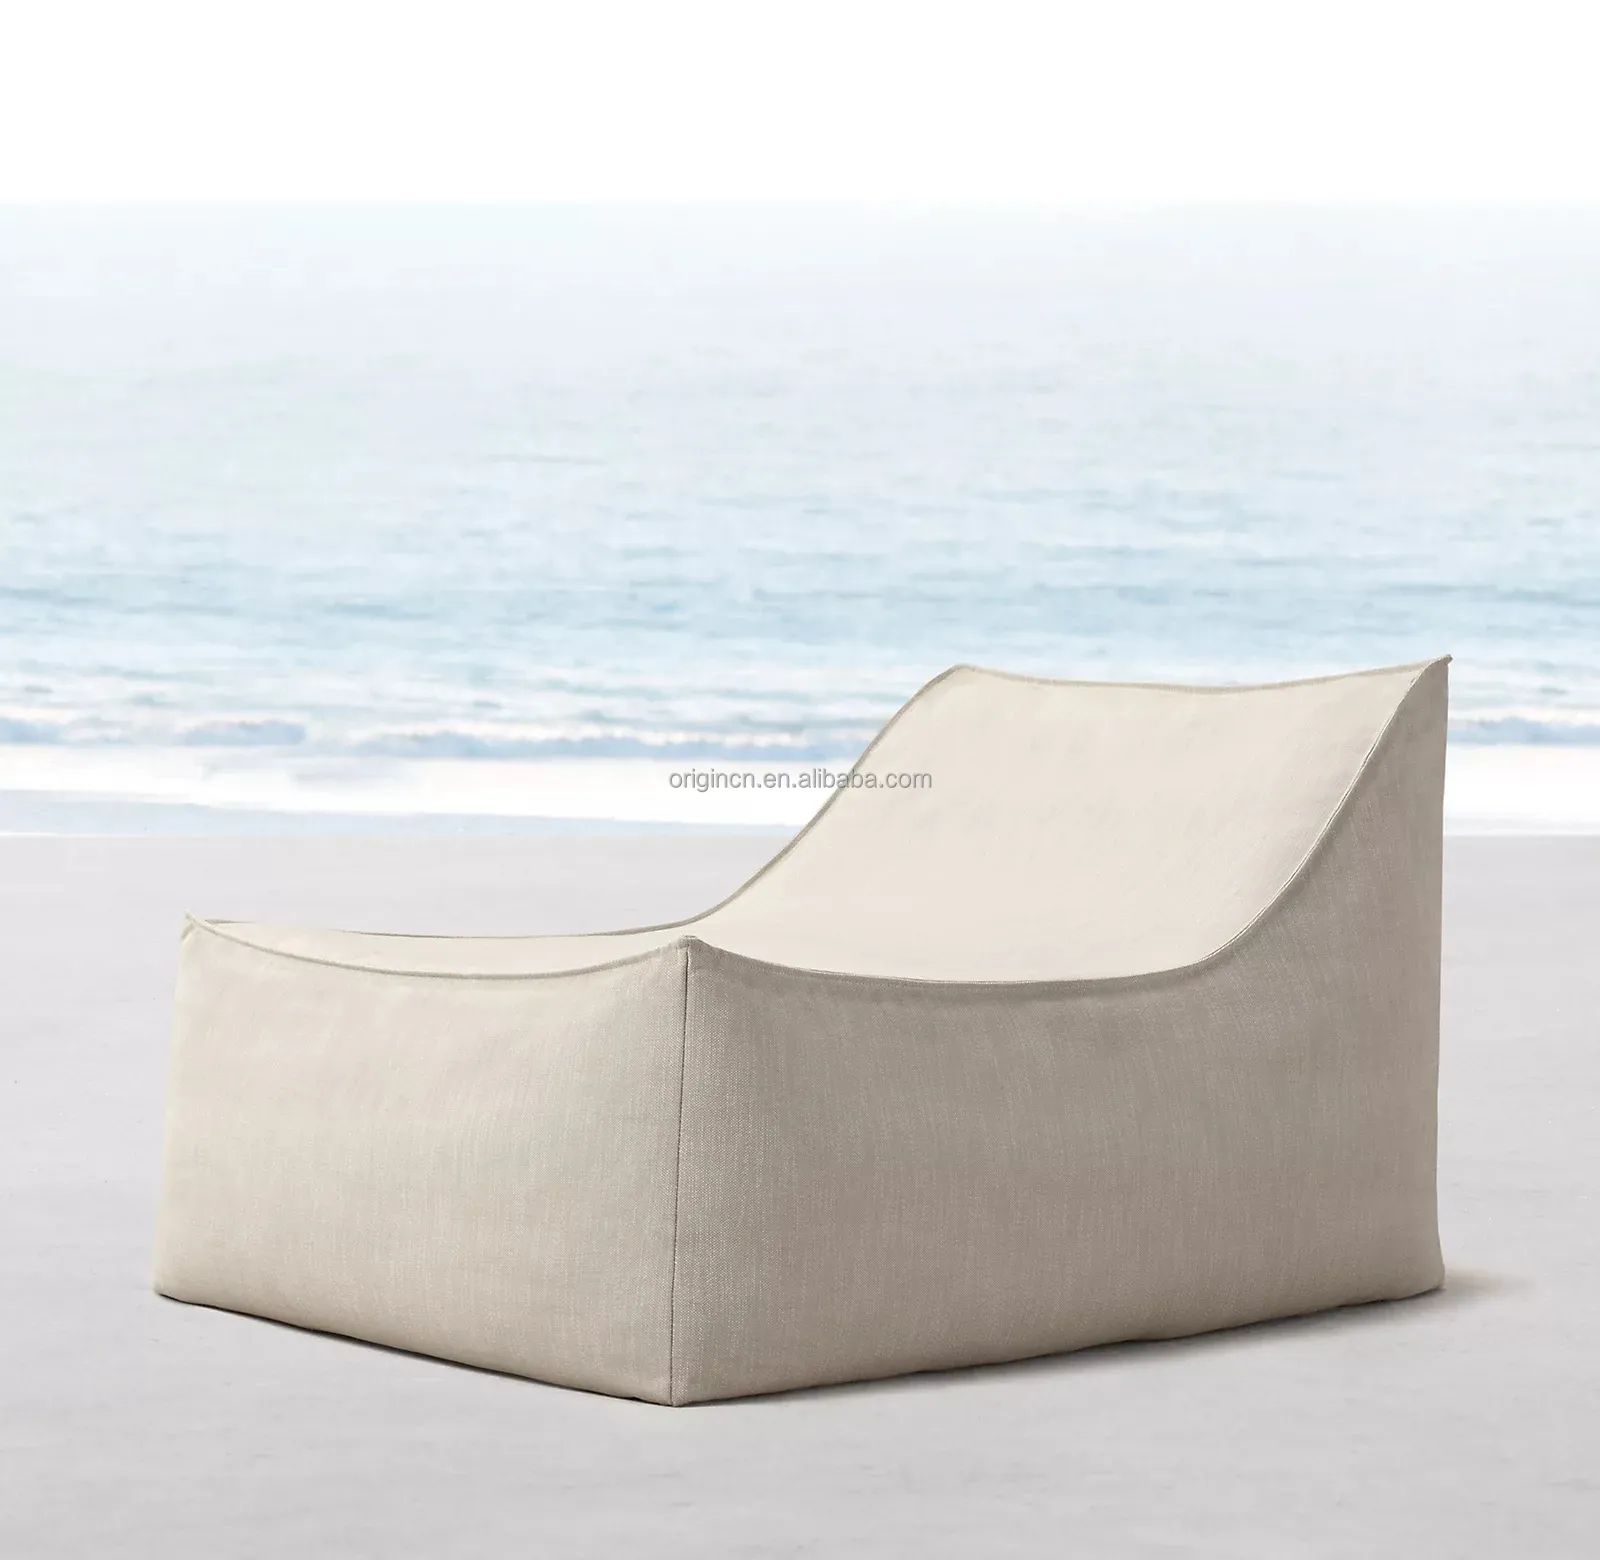 Prezzo di fabbrica divano da giardino imbottito buona permeabilità all'aria modellazione fluente graziosa poltrona da salotto per interni all'aperto